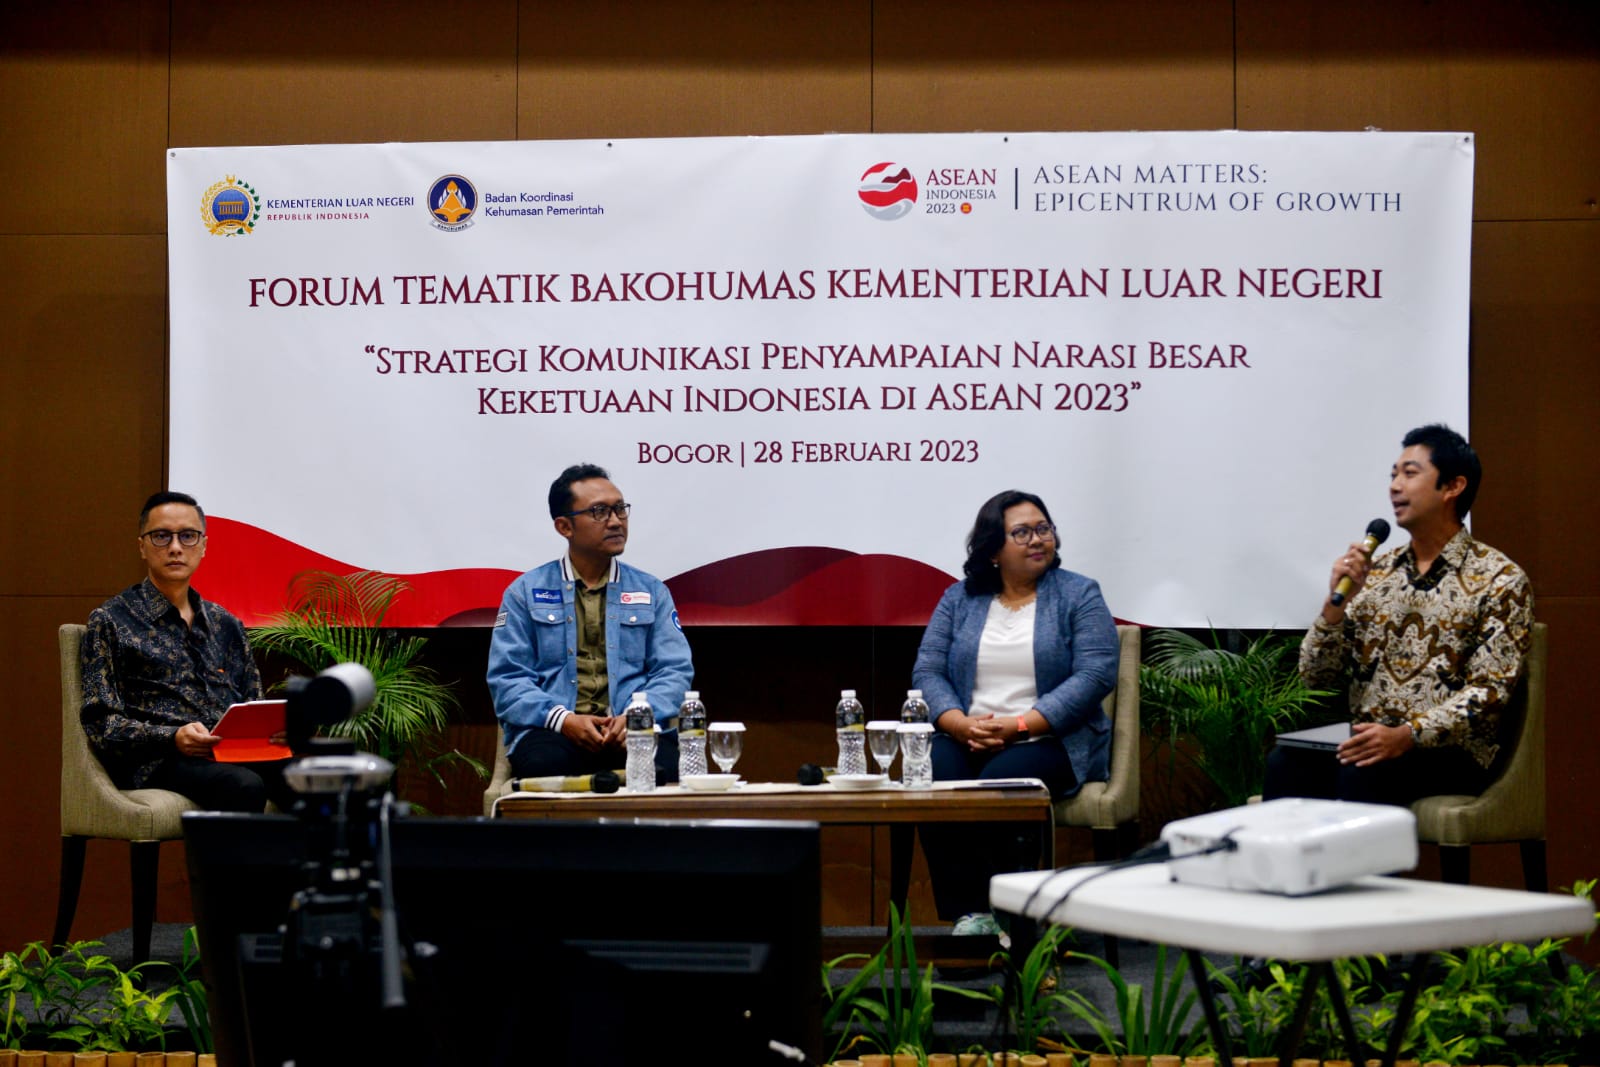 Koordinasi dan Kolaborasi Humas K/L Jadi Kunci Penting Strategi Komunikasi Keketuaan Indonesia di ASEAN 2023